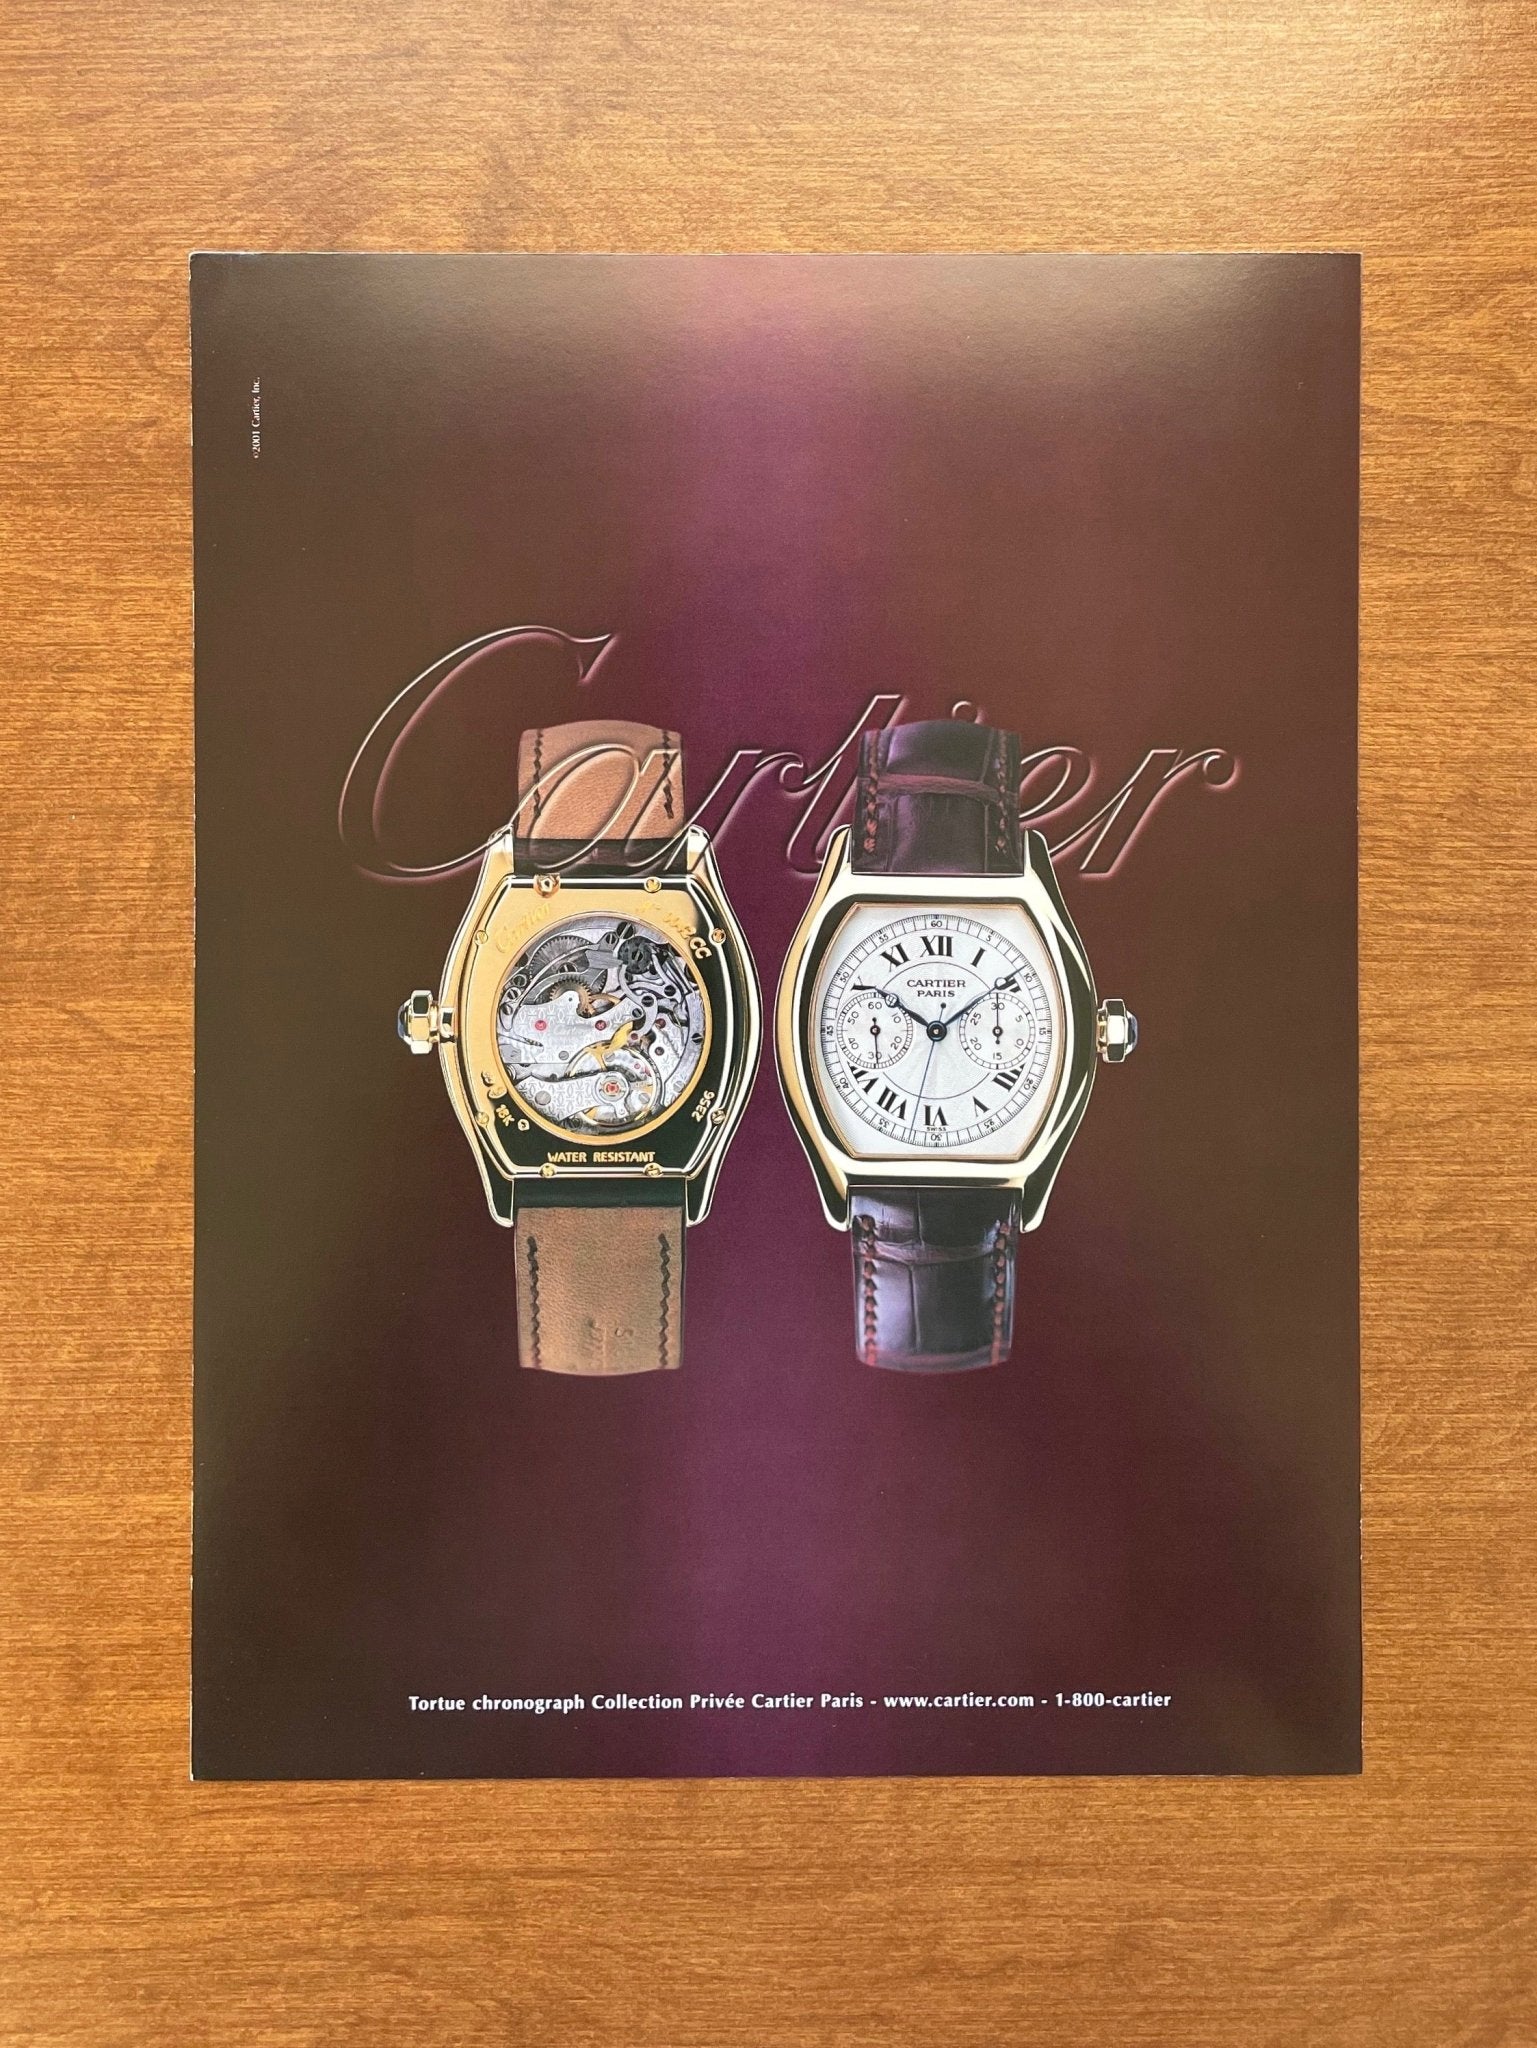 2001 Cartier Tortue Monopoussoir Chronograph Advertisement